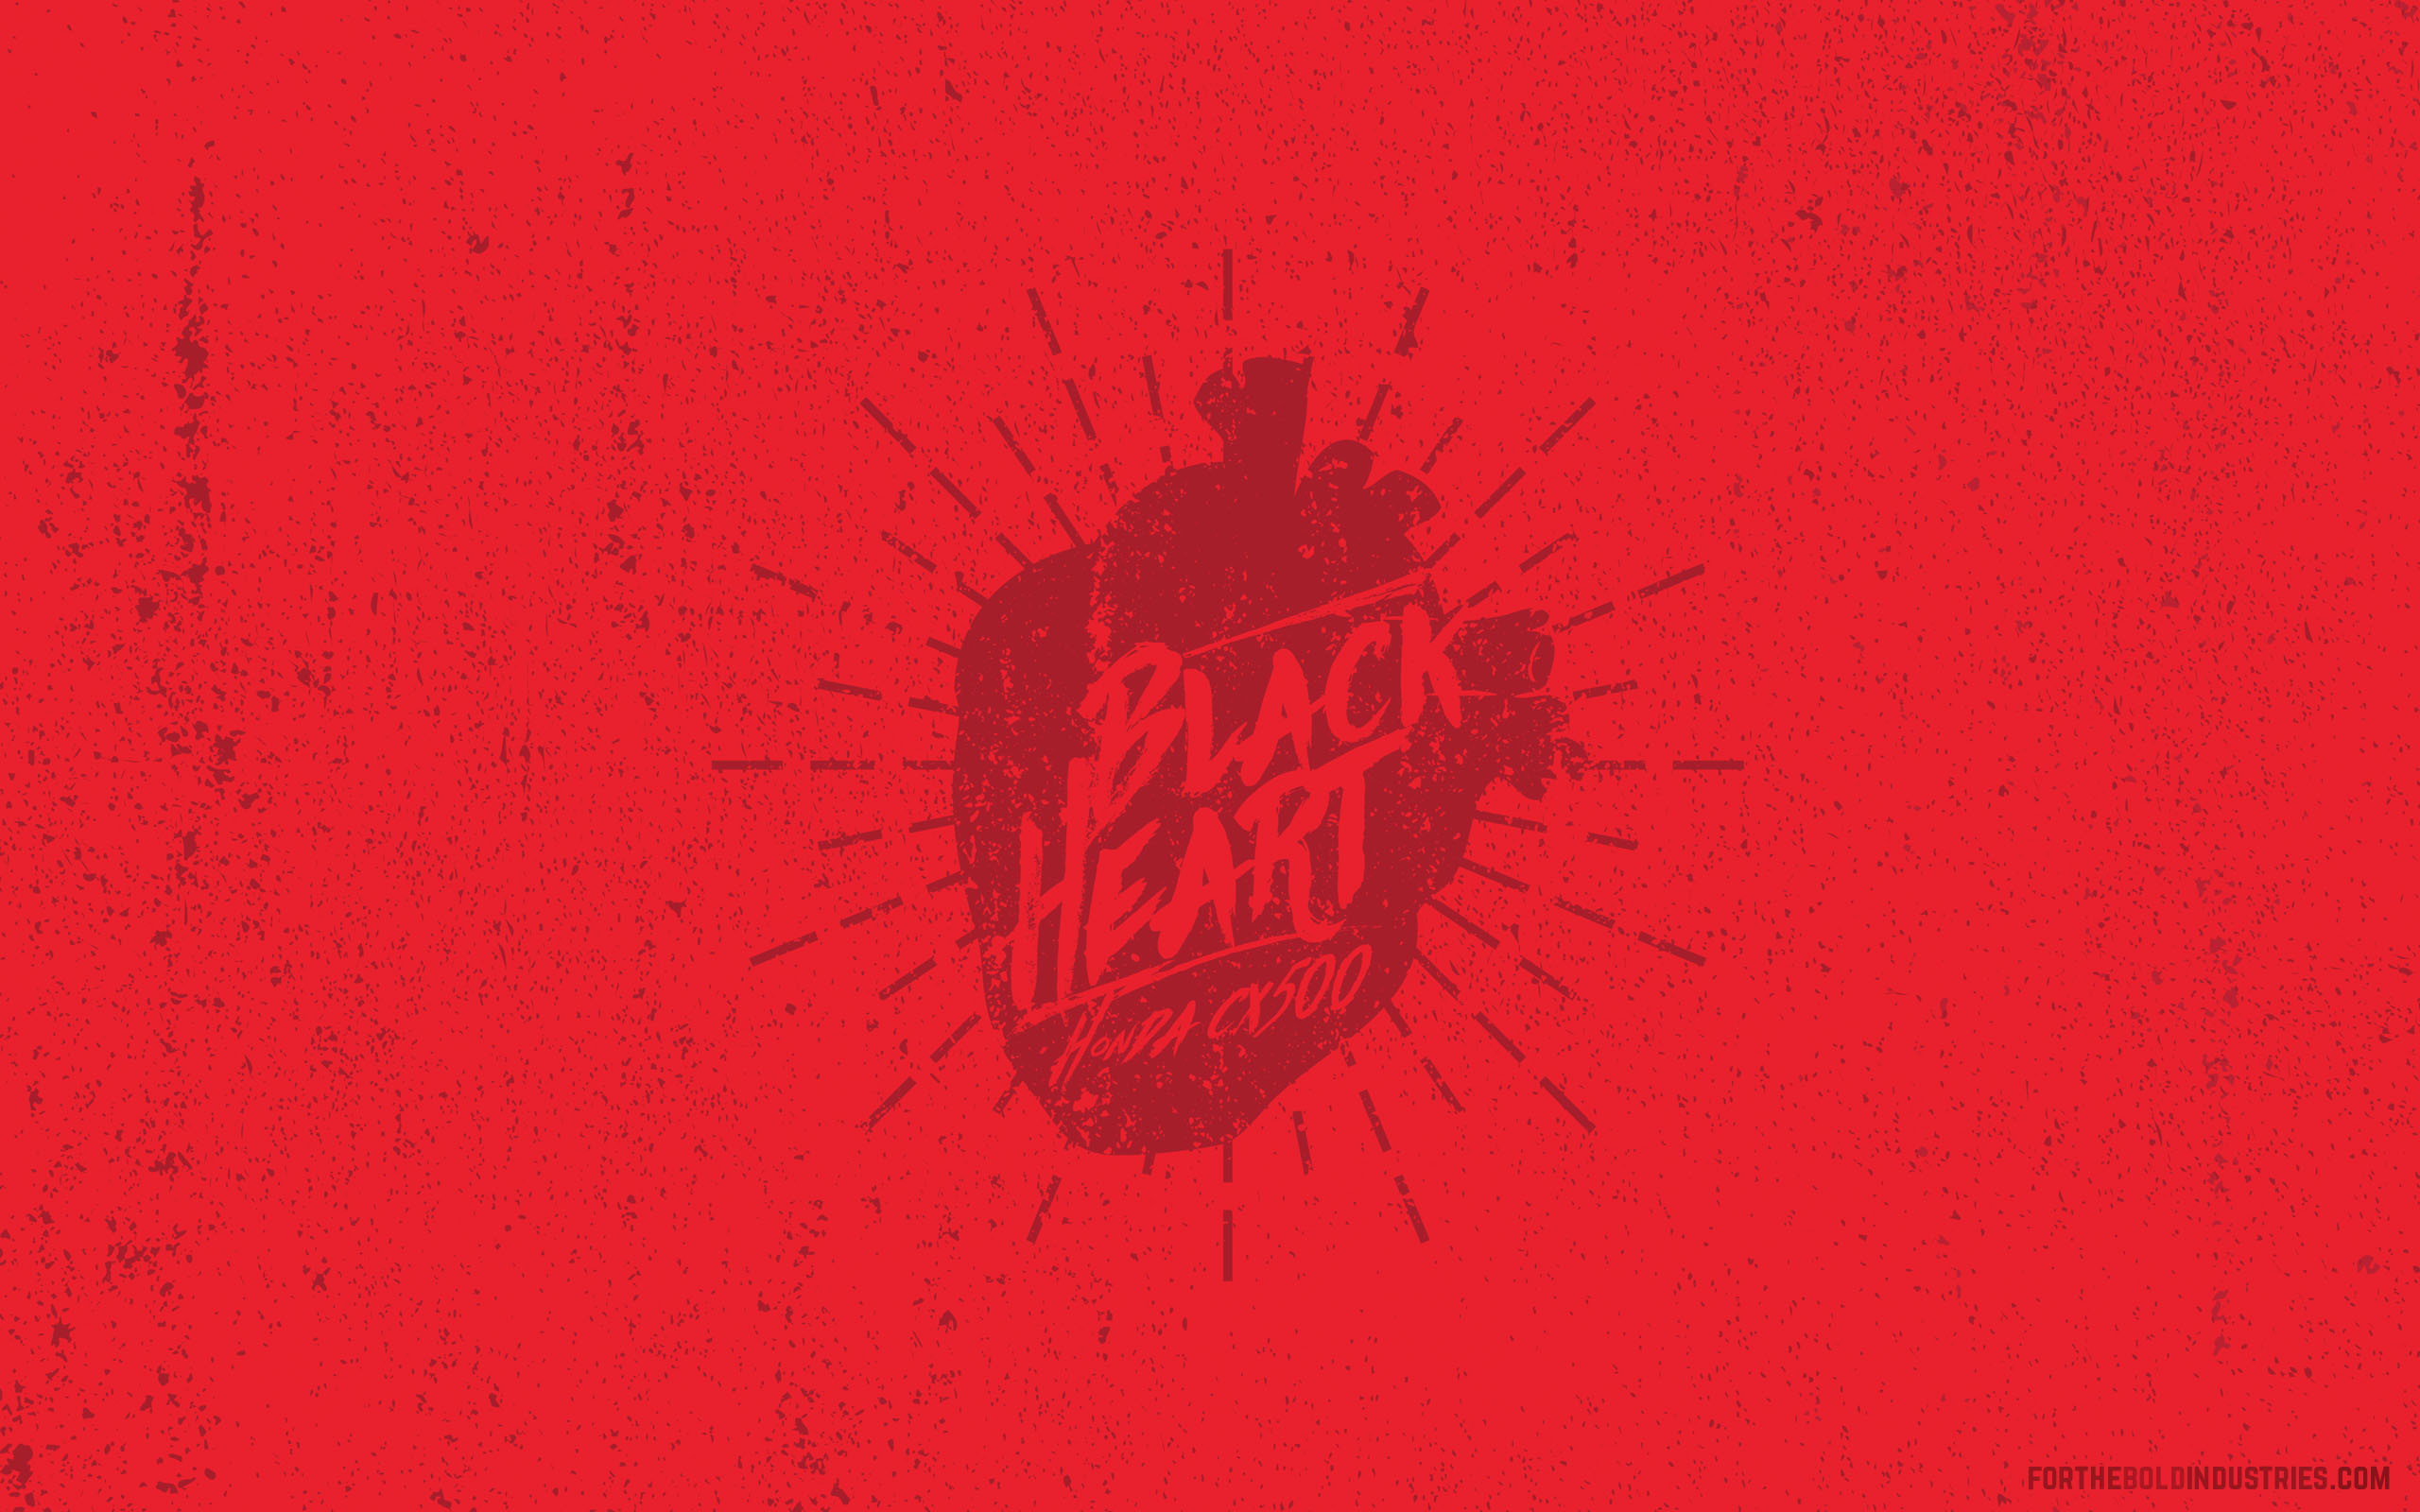 2560x1600 ... Blackheart downloadable wallpaper. Enjoy. Download